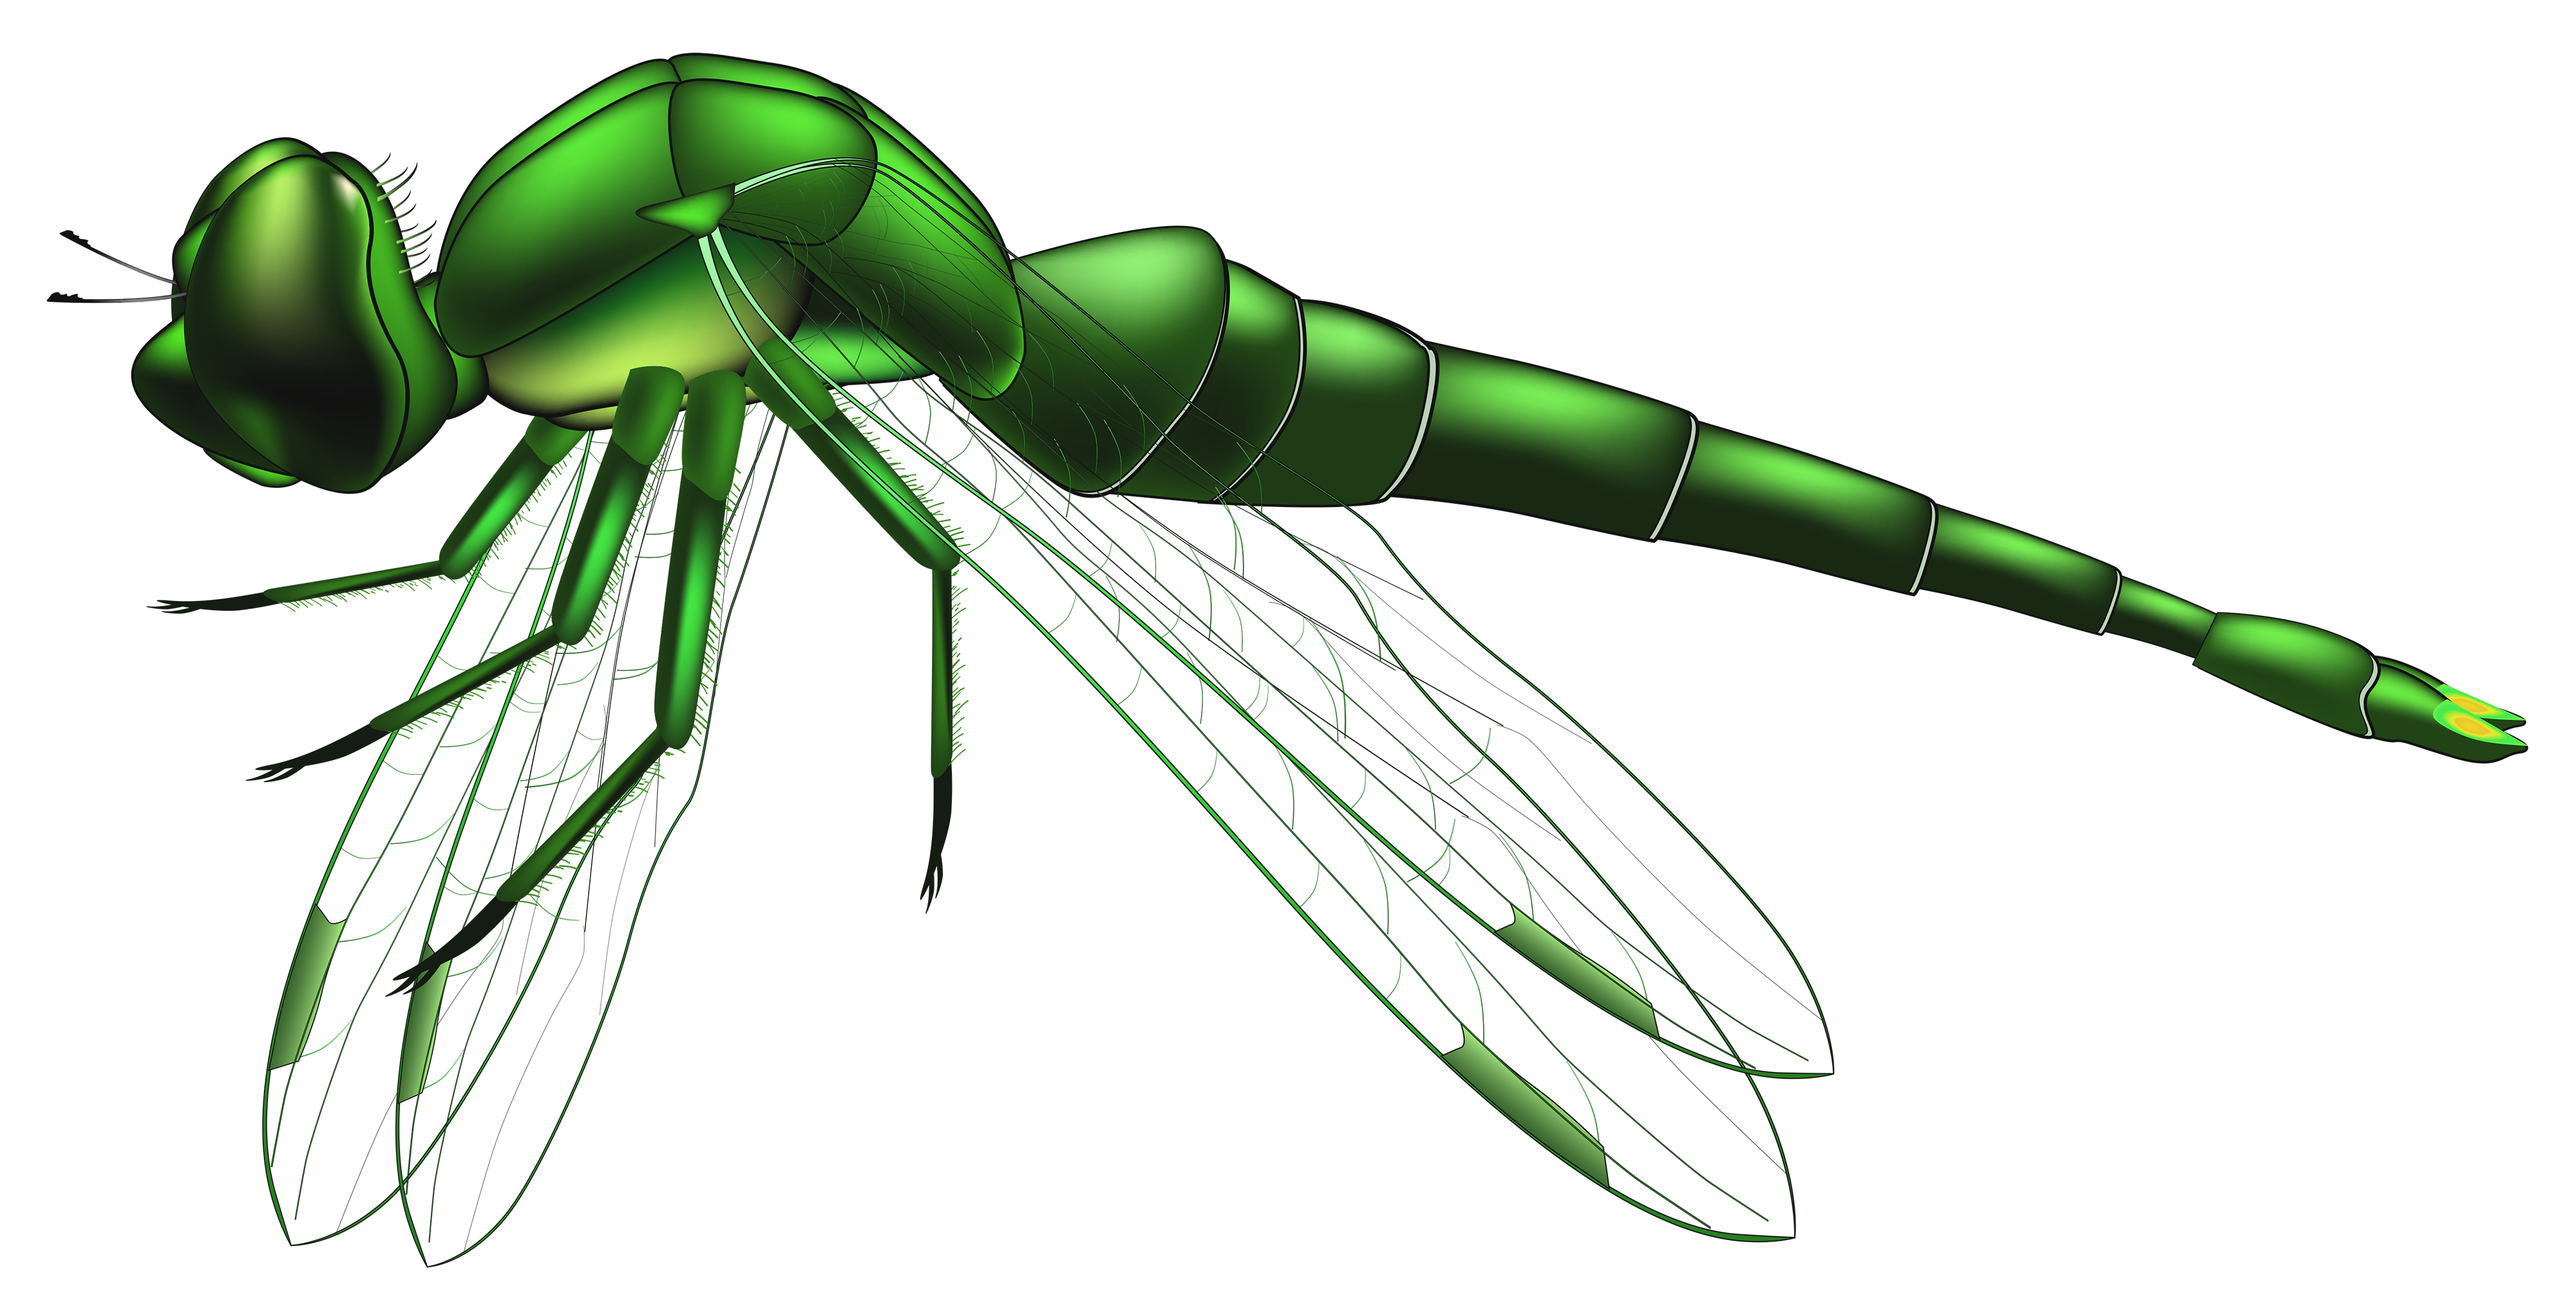 dragonfly clip art